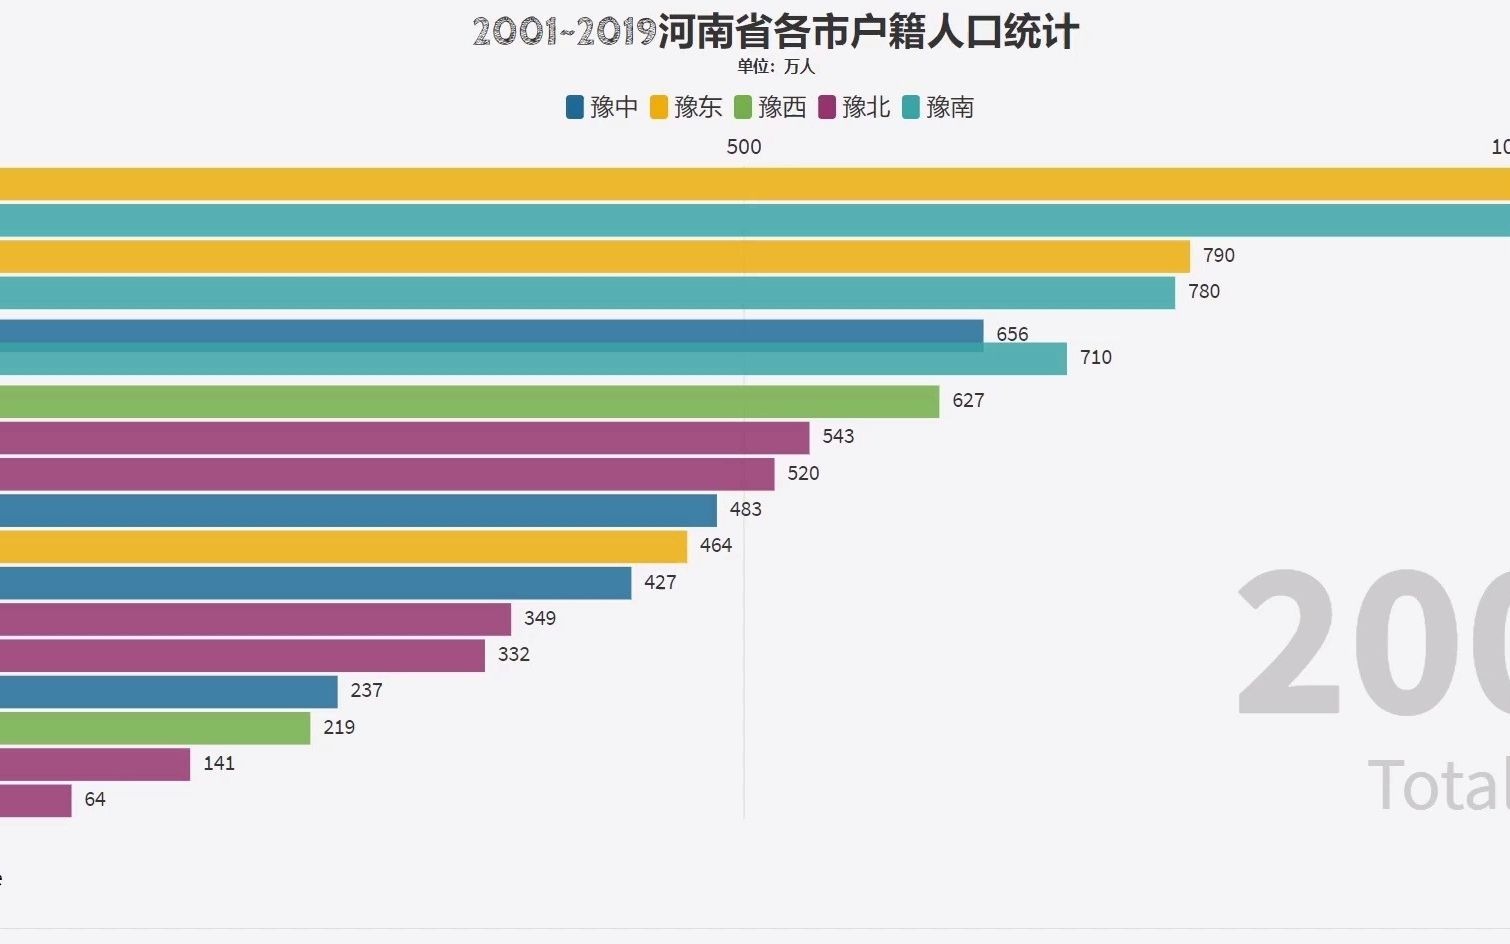 河南省人口分布图片